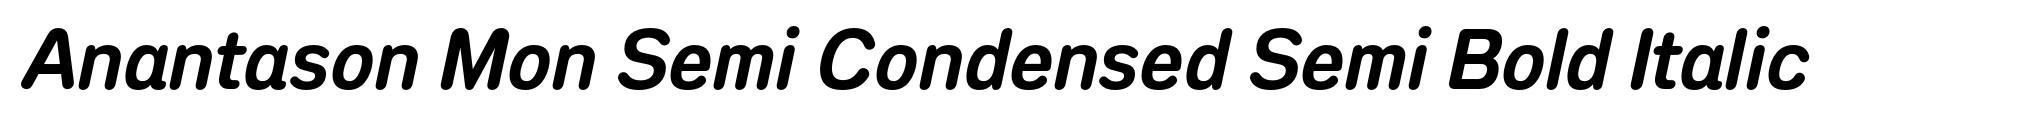 Anantason Mon Semi Condensed Semi Bold Italic image